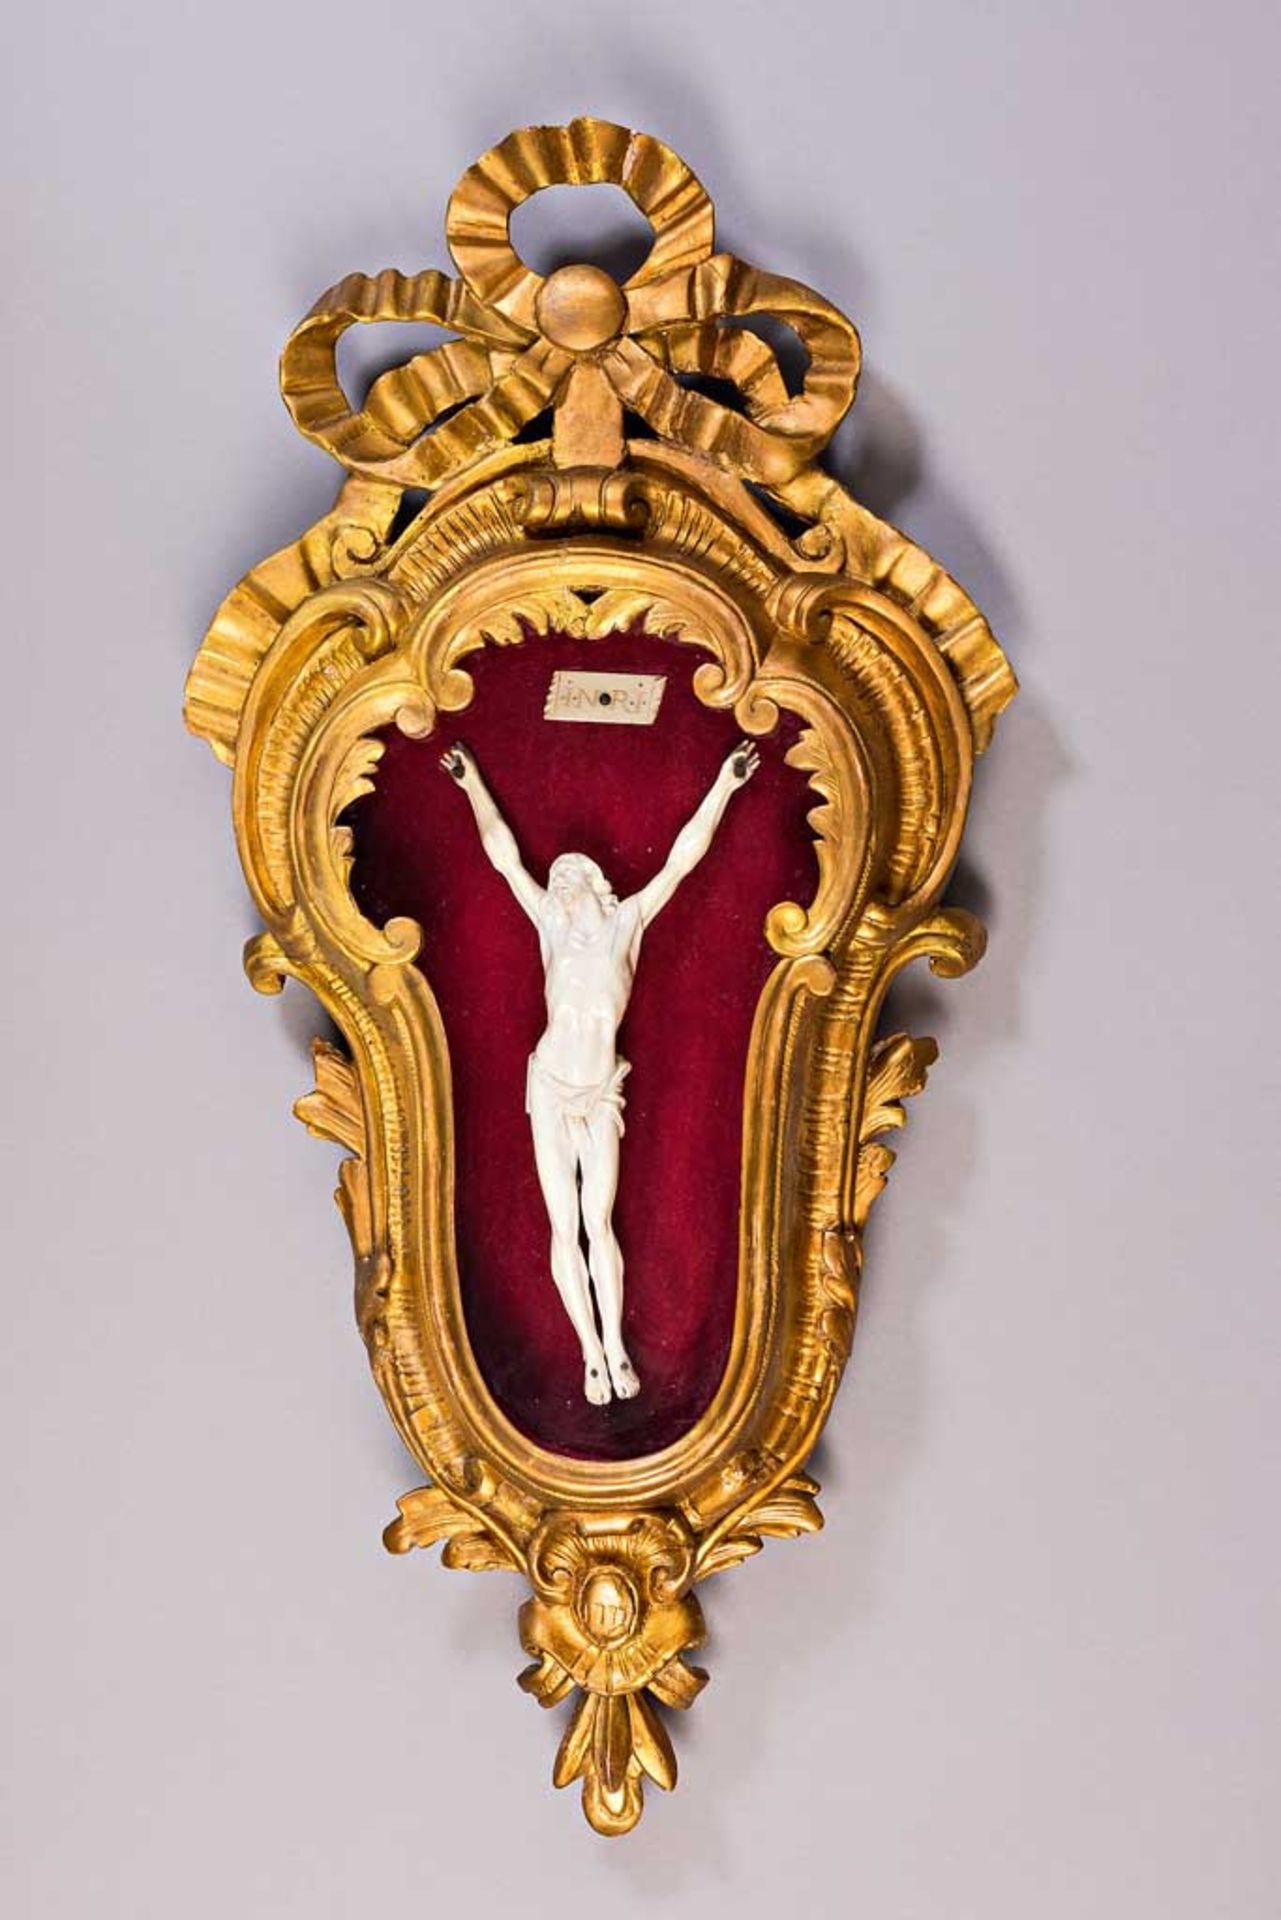 Elfenbein-Kruzifixus. Viernageltypus. 18. Jh. H 26 cm. In verglastem Volutenkästchen, Gesamthöhe